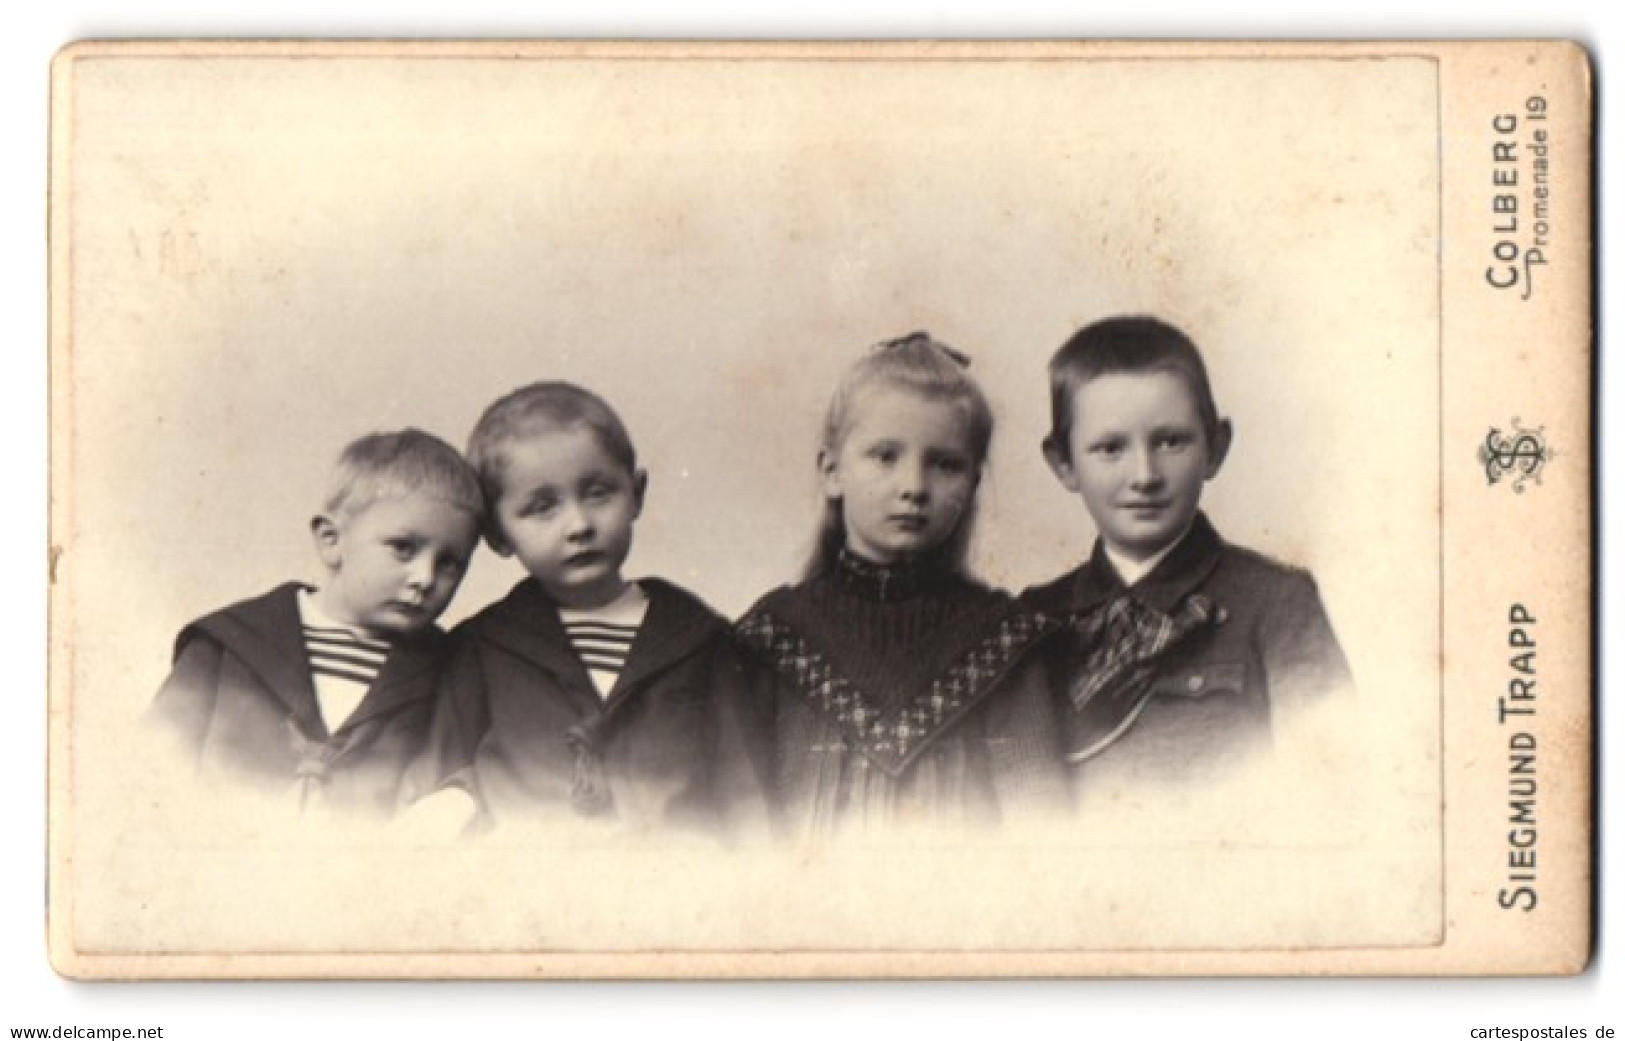 Fotografie Siegmund Trapp, Colberg, Promenade 19, Portrait Vier Niedliche Kinder In Hübscher Kleidung  - Anonyme Personen